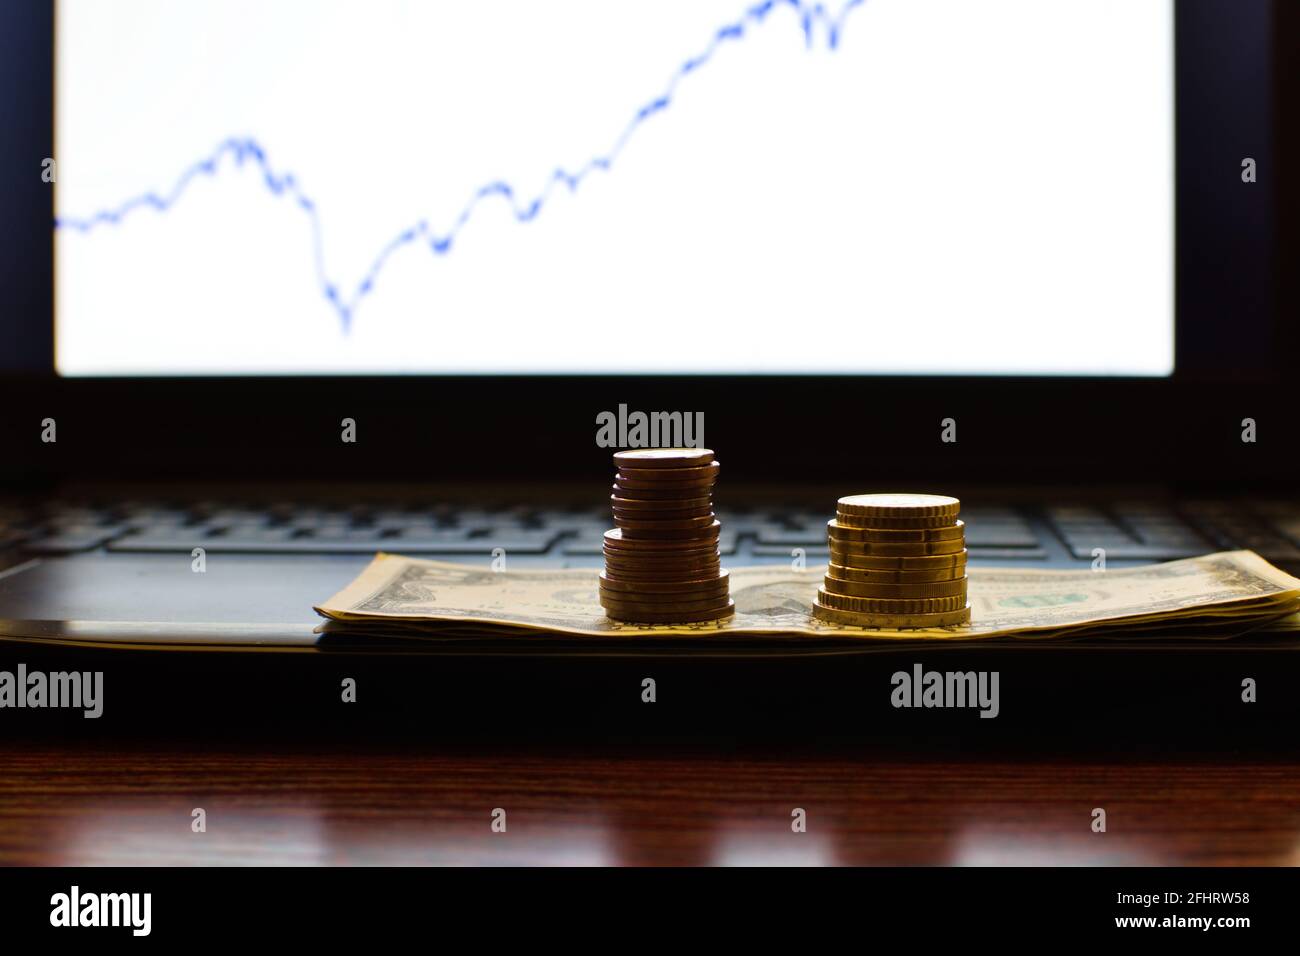 piles de pièces sur un arrière-plan d'écran d'ordinateur flou avec du stock graphique Banque D'Images